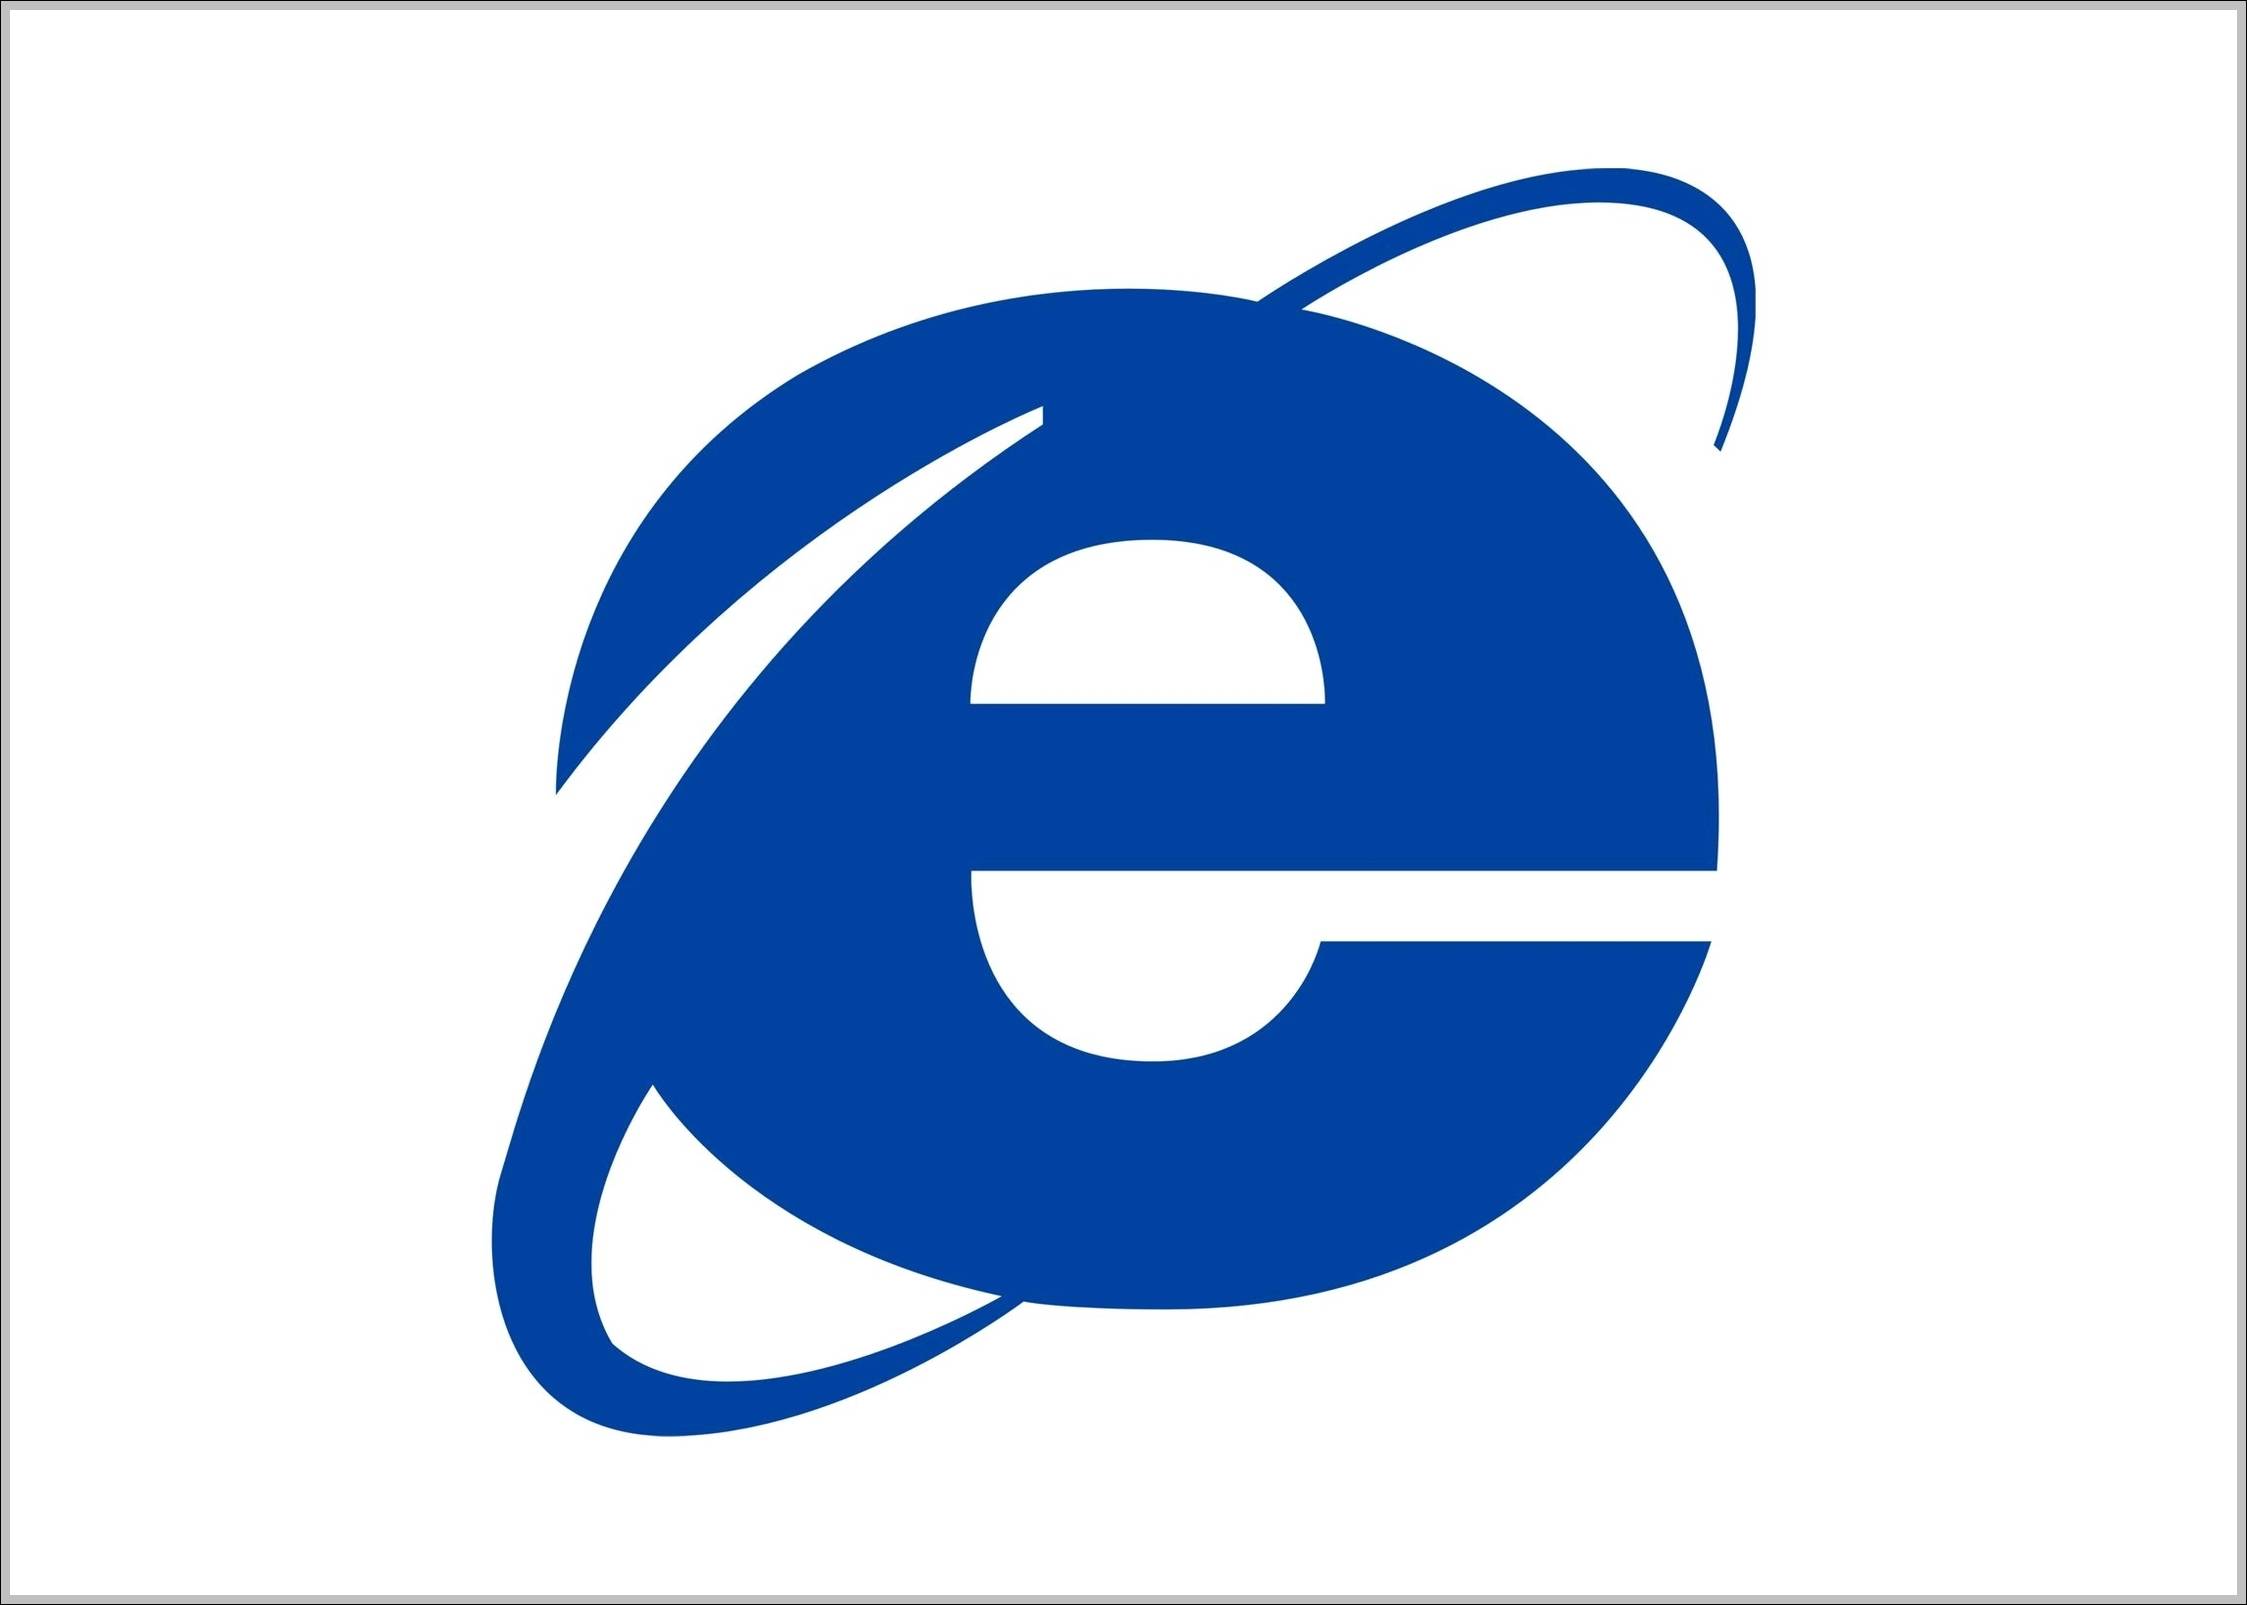 Internet Explorer logo old